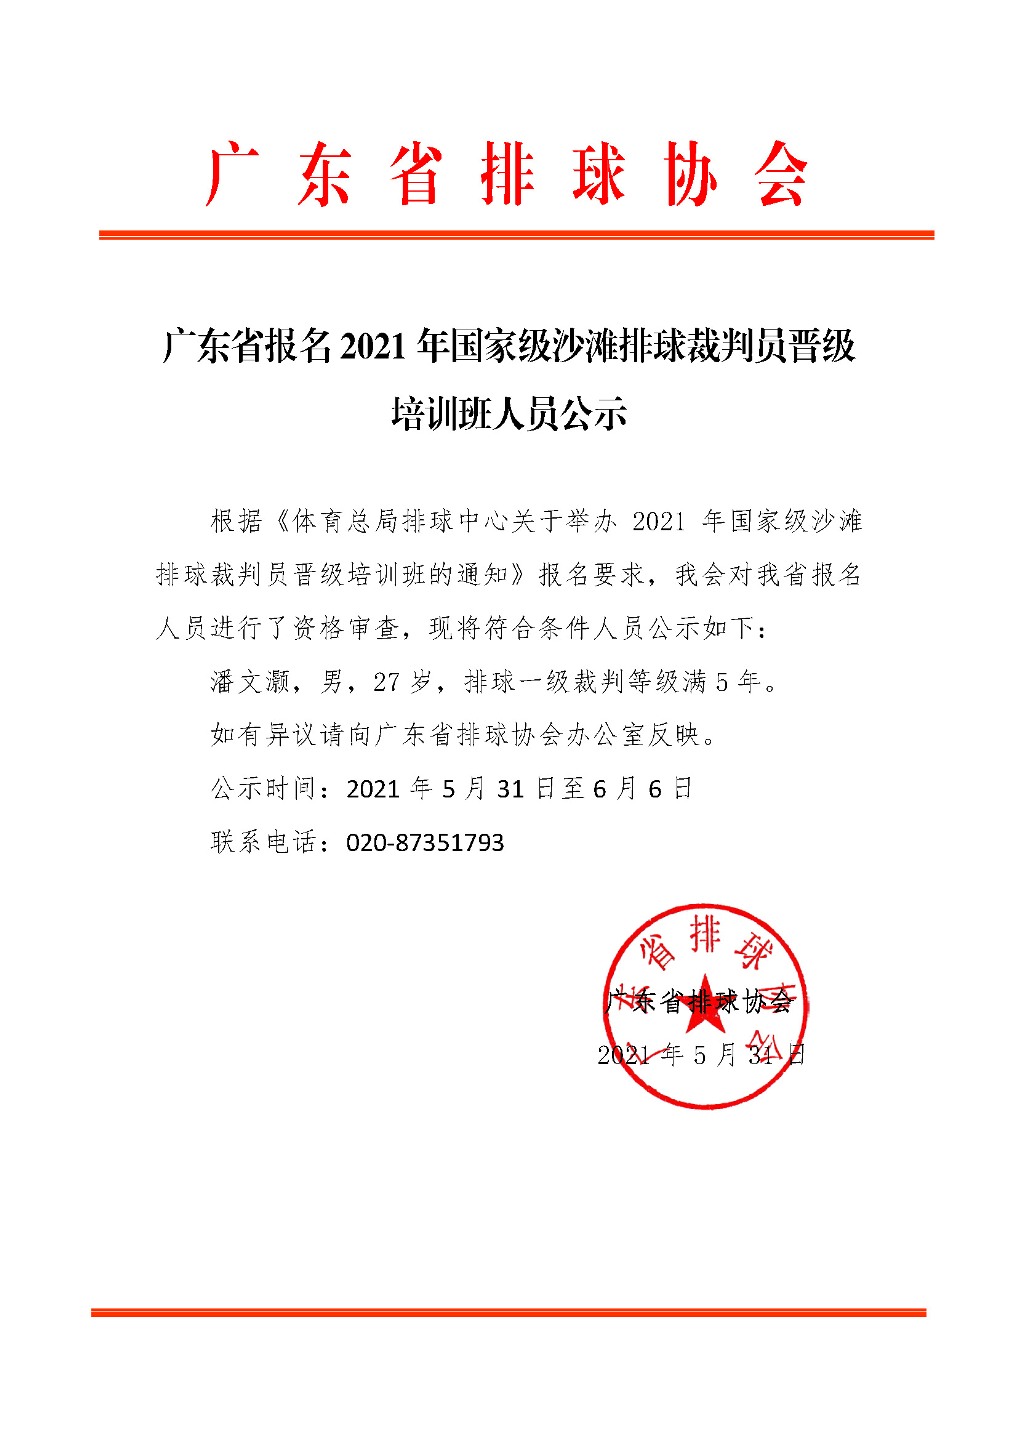 广东省报名2021年国家级沙滩排球裁判员晋级培训班人员公示.jpg